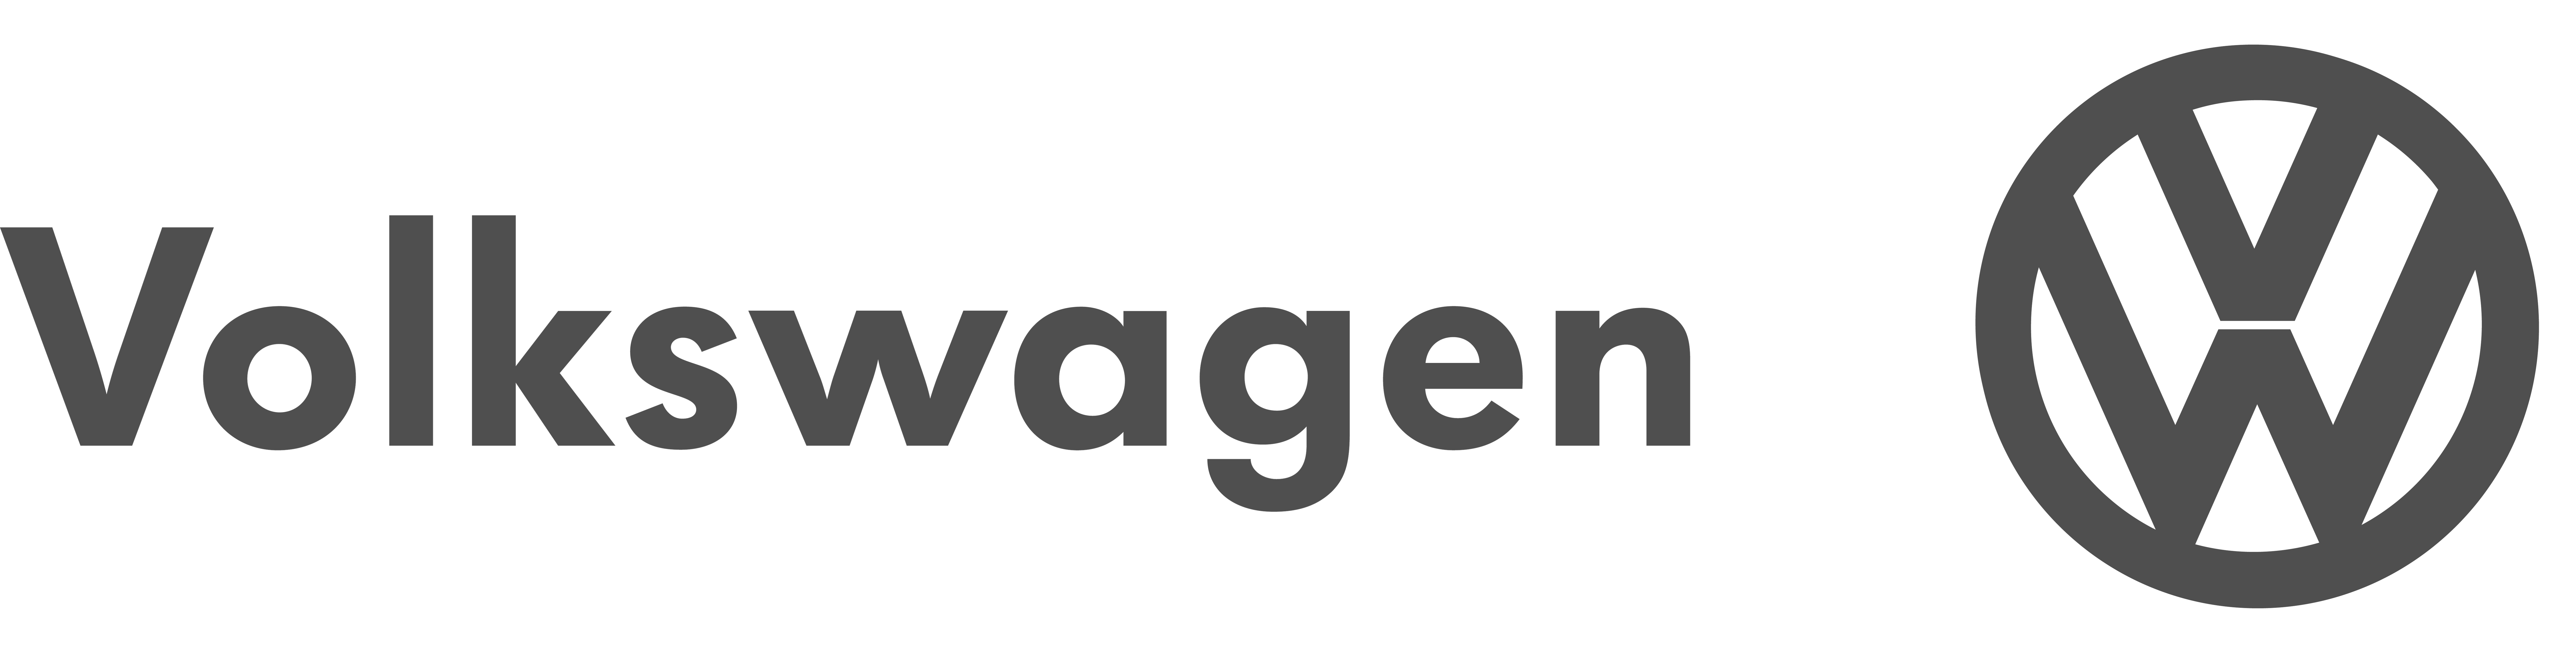 volkswagen-6-logo-svg-vector